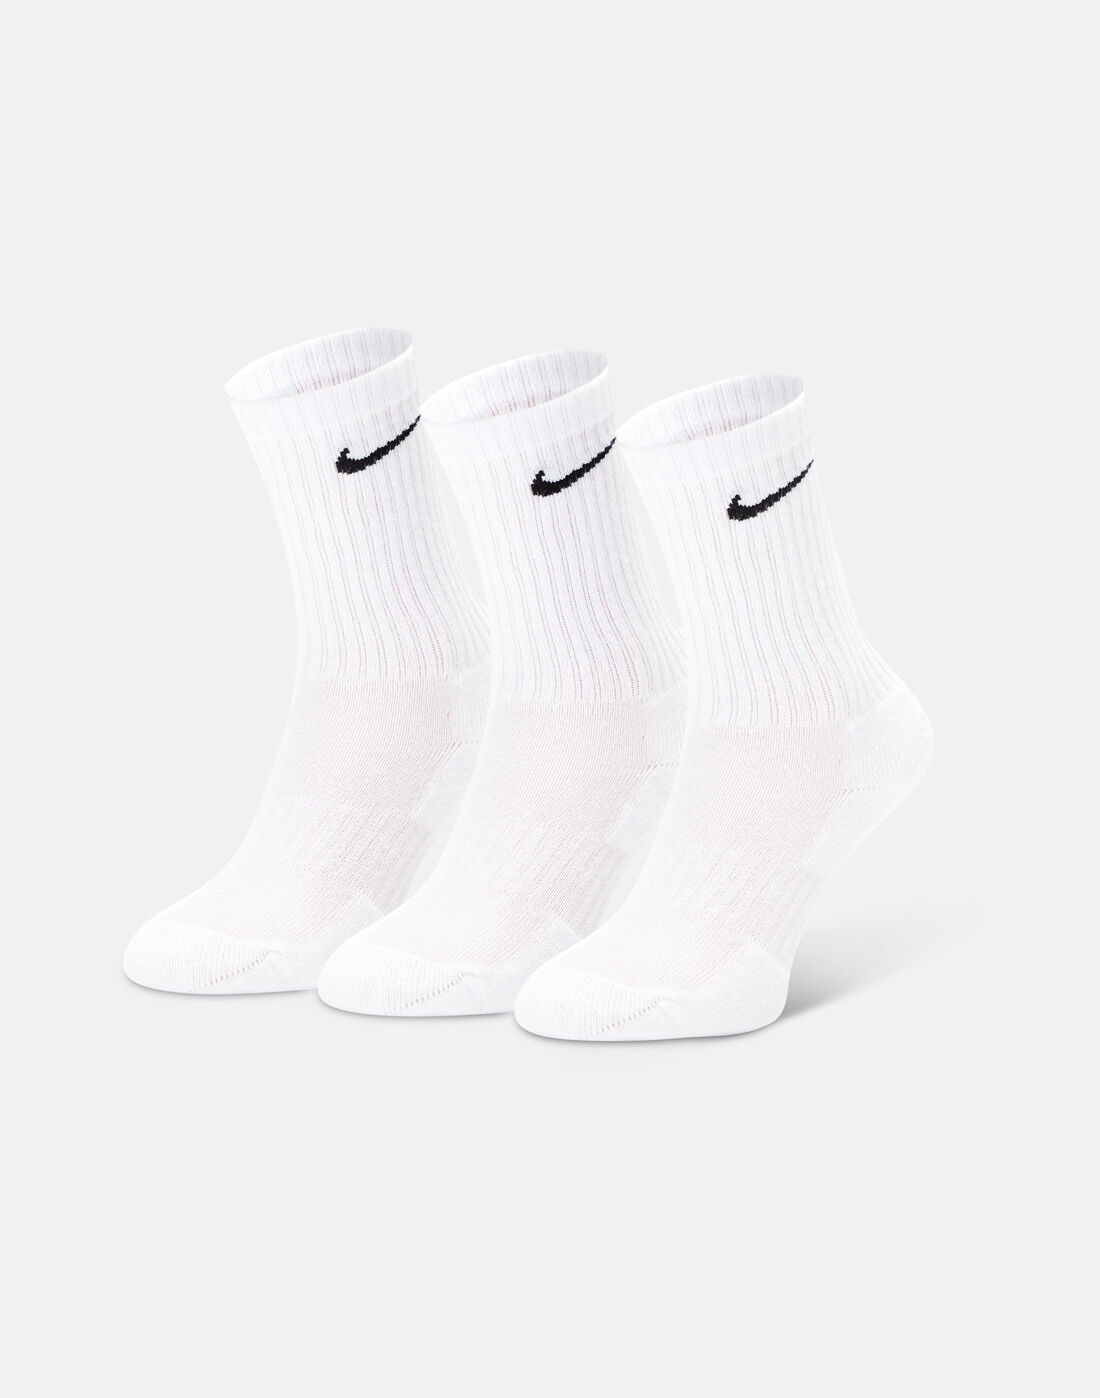 nike wholesale socks